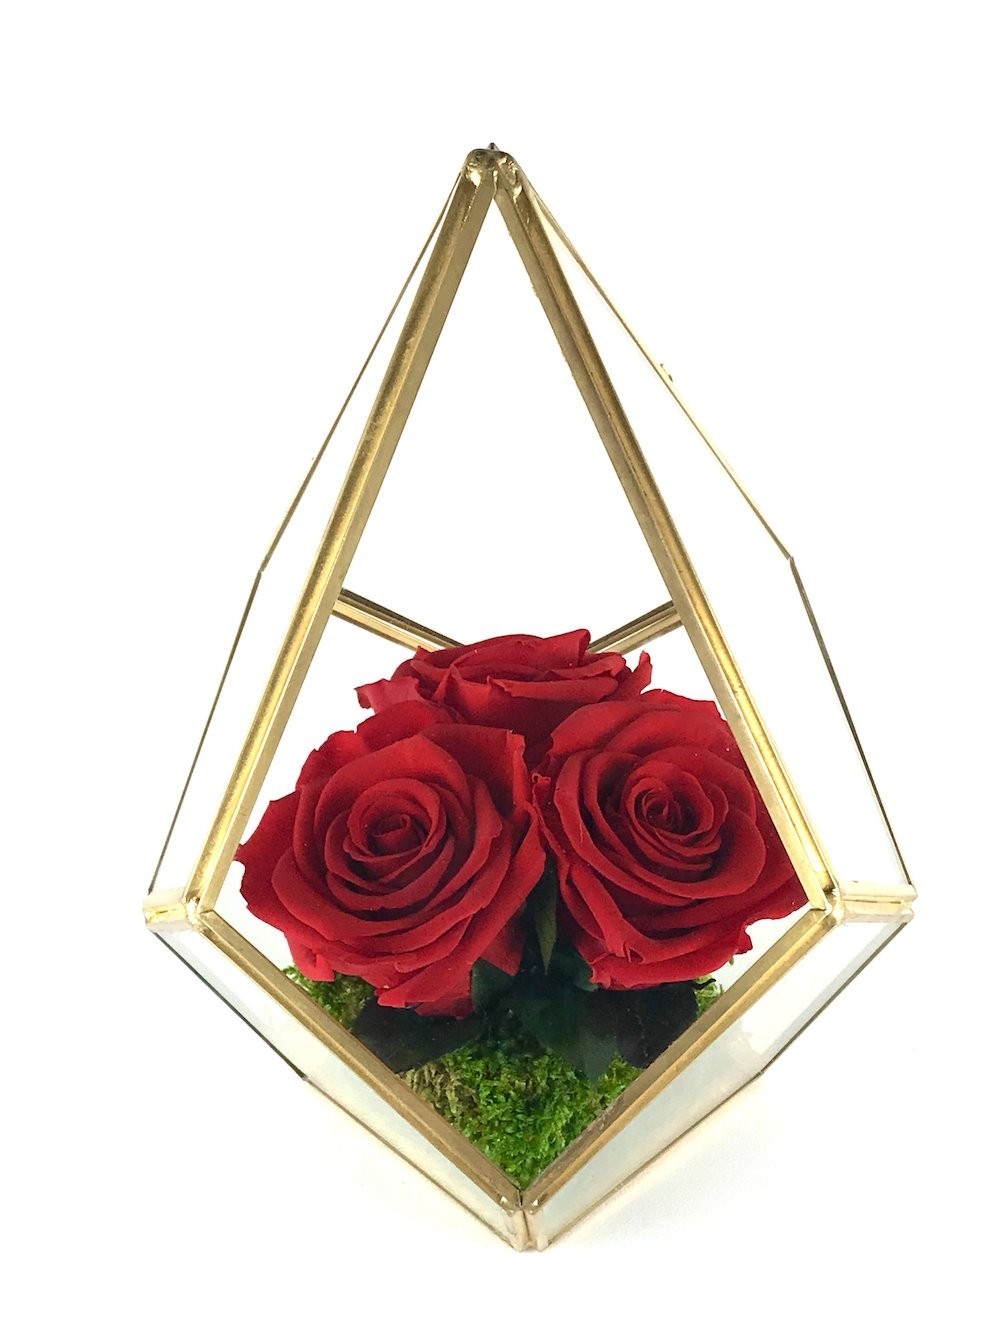 Trandafiri criogenati rosii in terarium sticla, online, cu pret special!